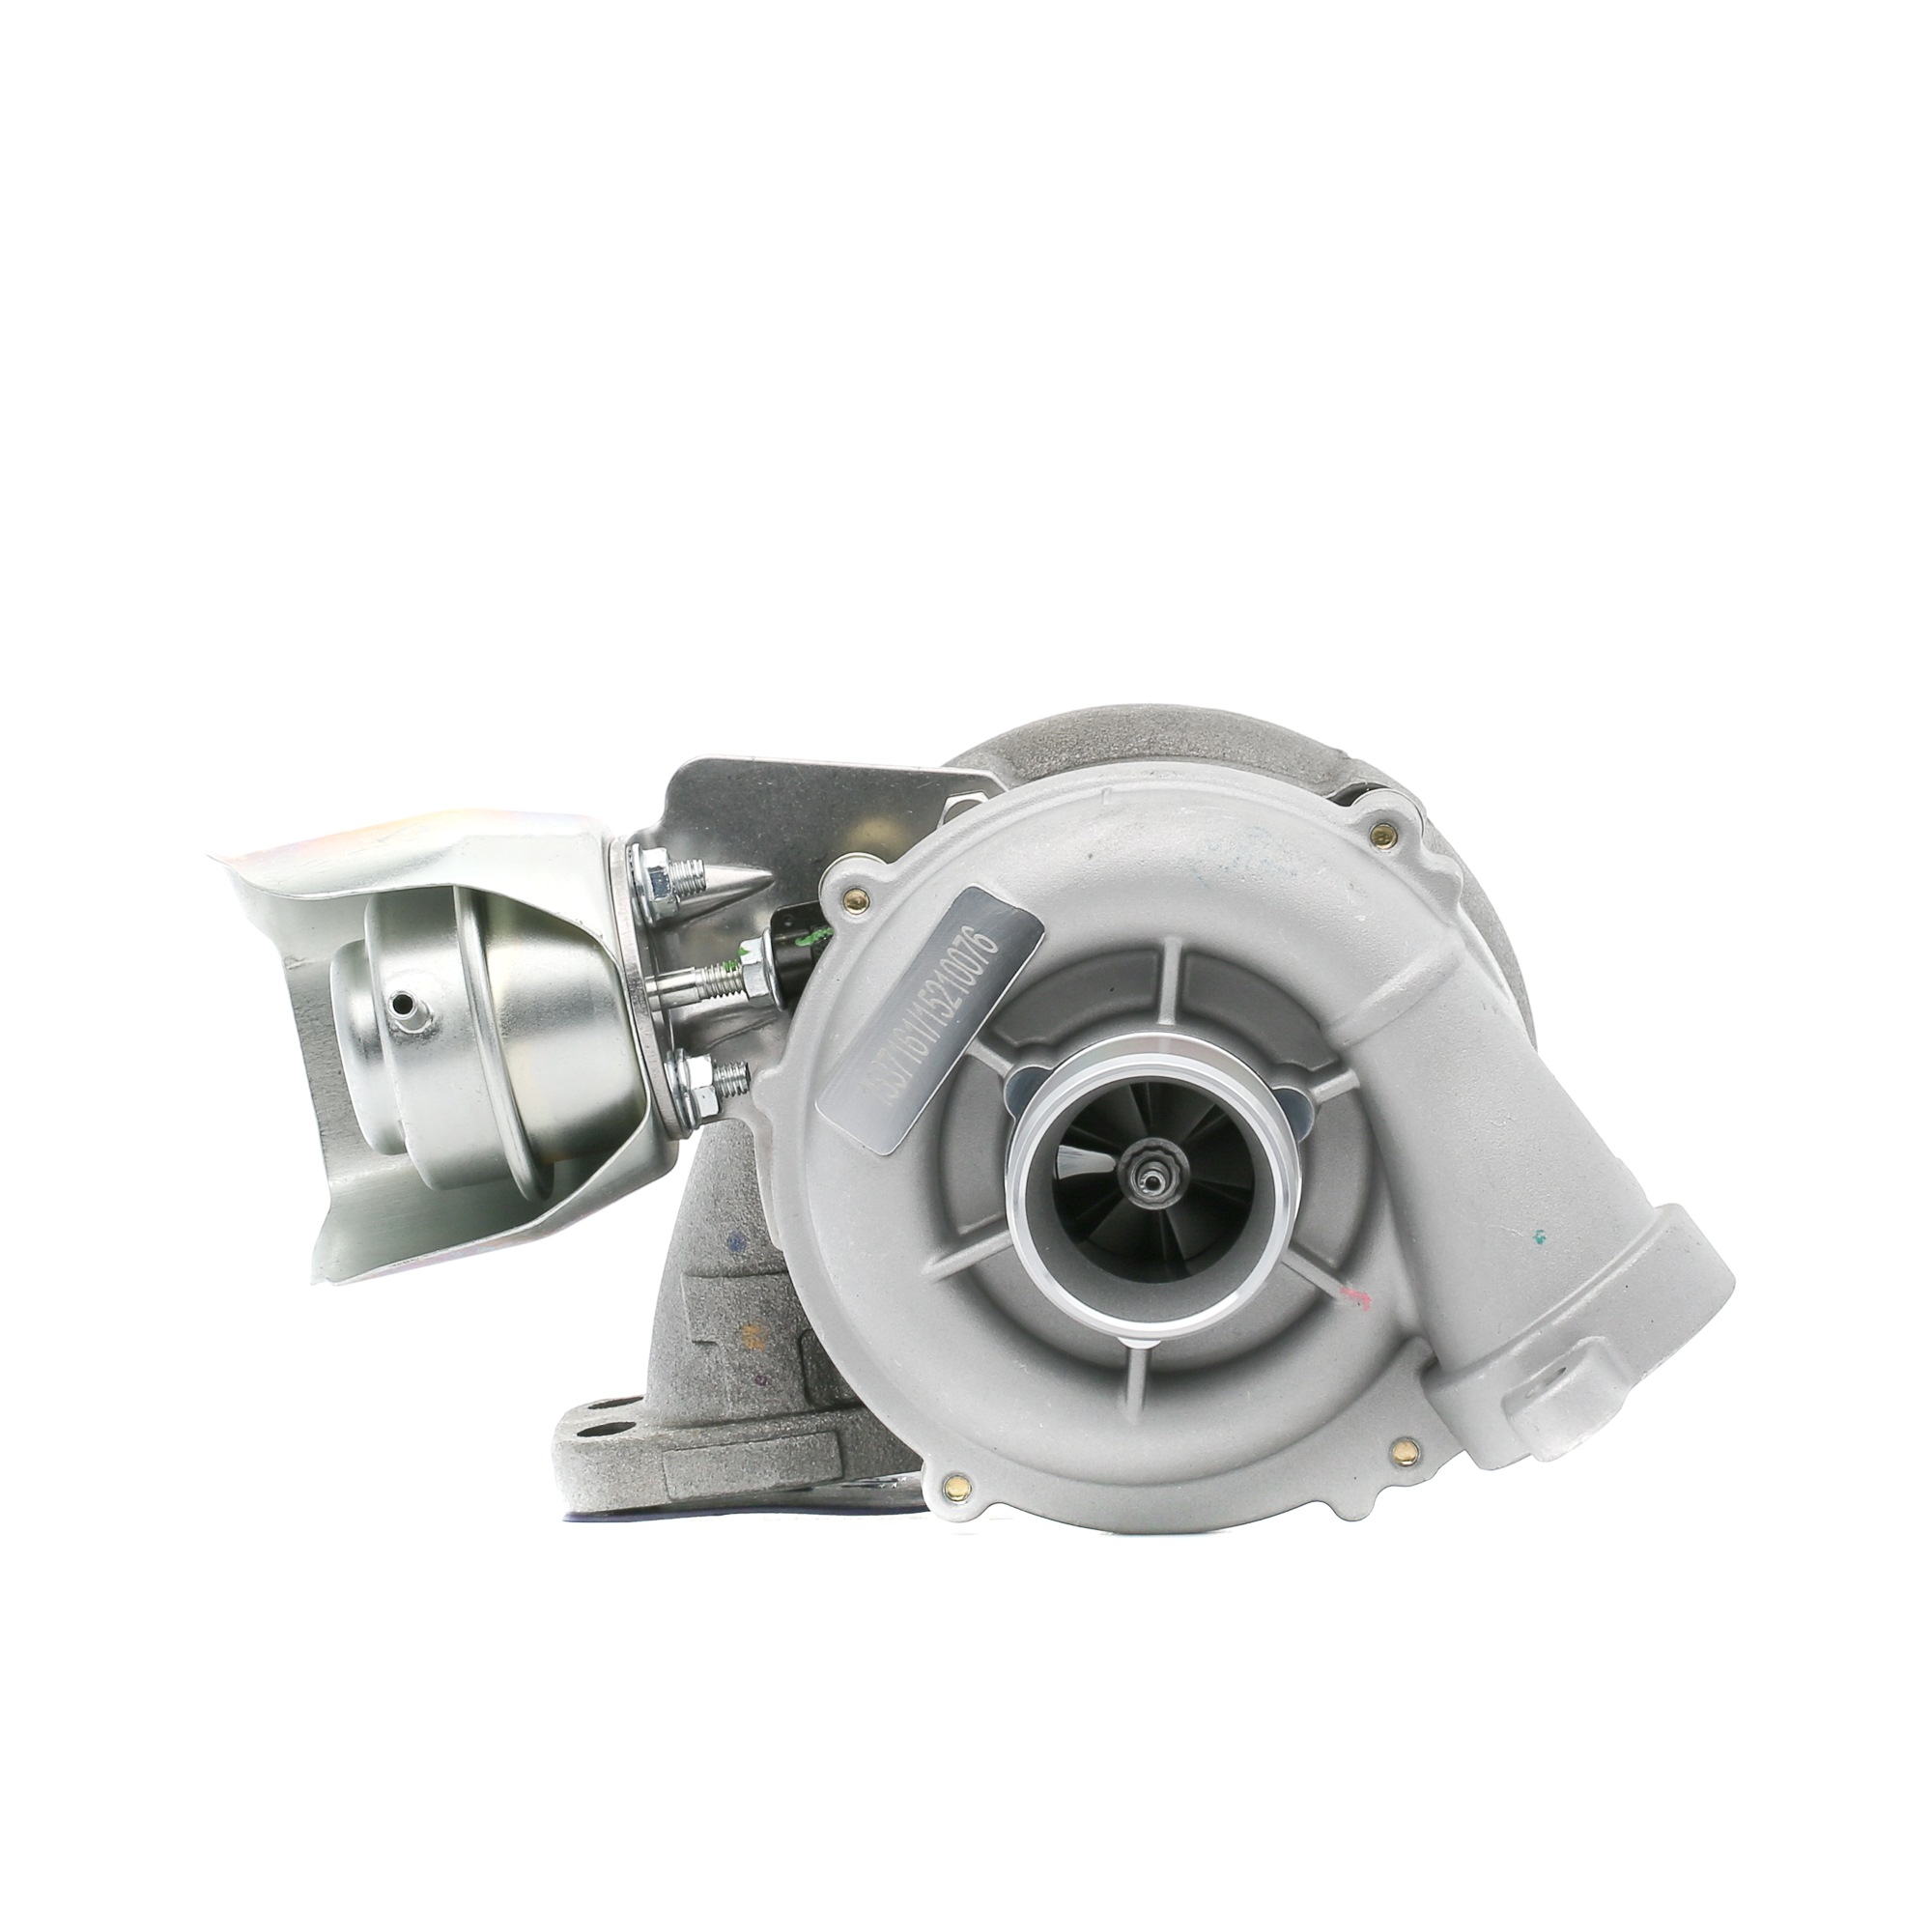 RIDEX 2234C0184 Turbina Turbocompressore a gas scarico, pneumatico, incl. Kit guarnizioni